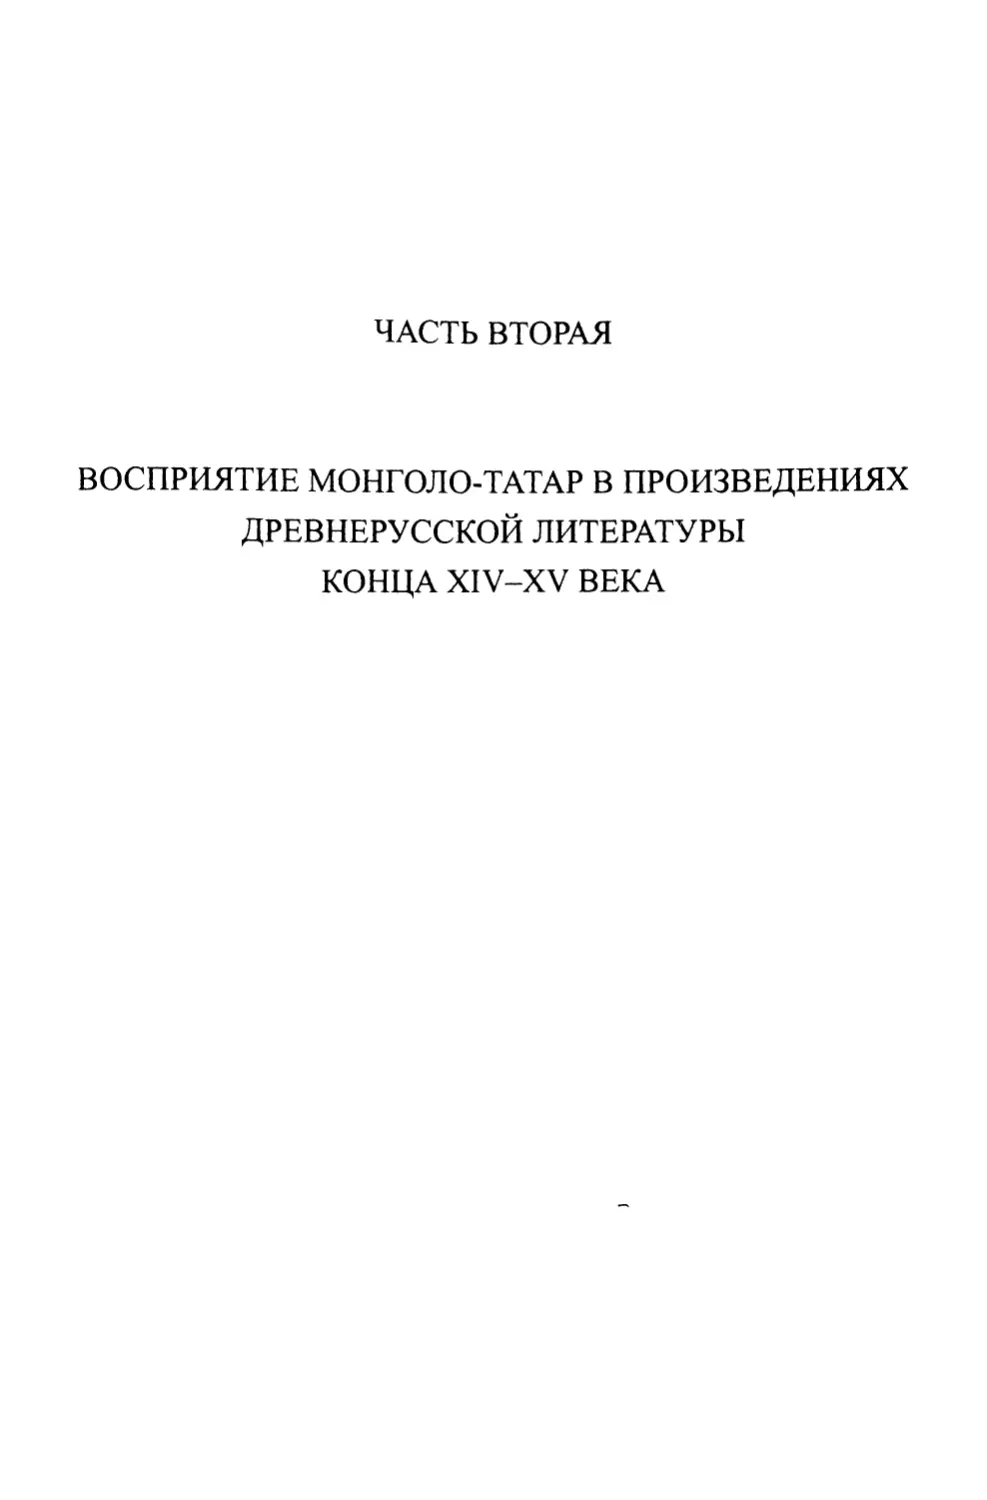 Часть вторая. Восприятие монголо-татар в произведениях древнерусской литературы конца XIV-XV века